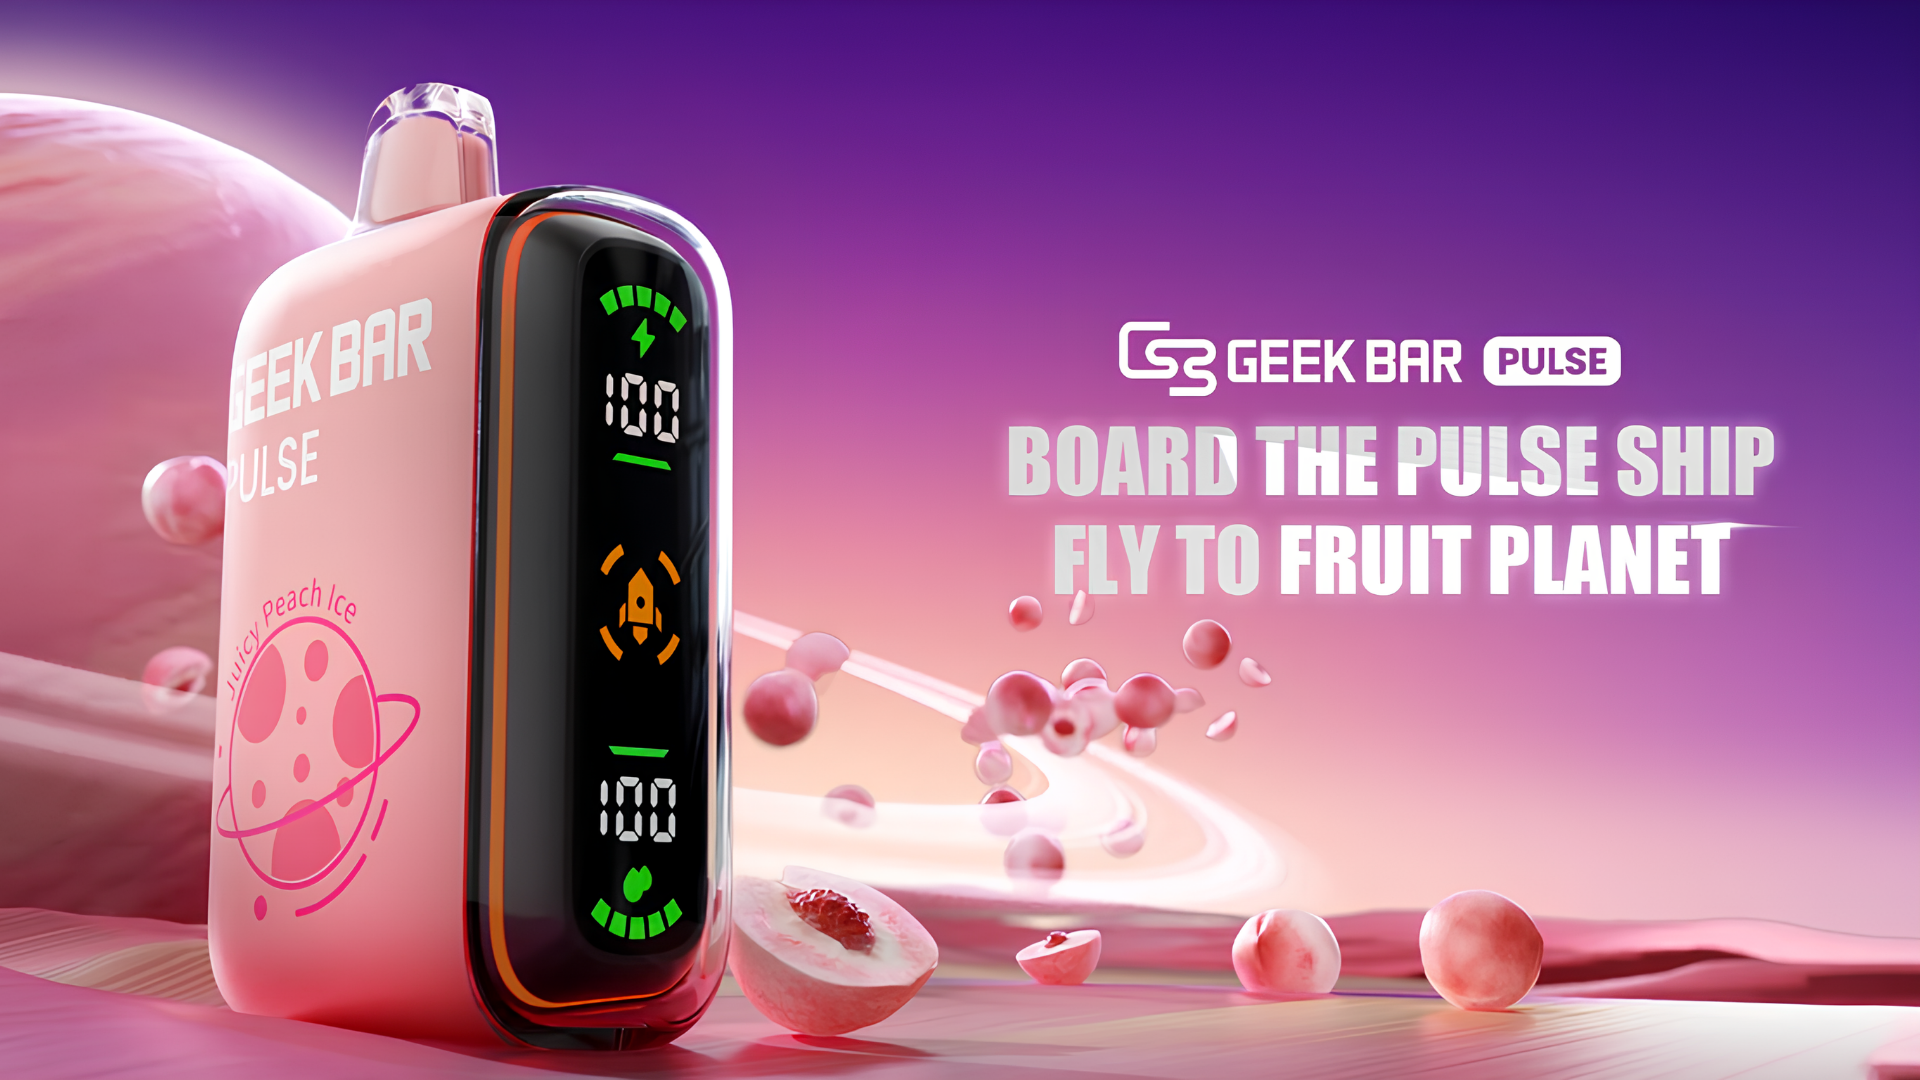 Geek Bar Pulse Disposable Vape